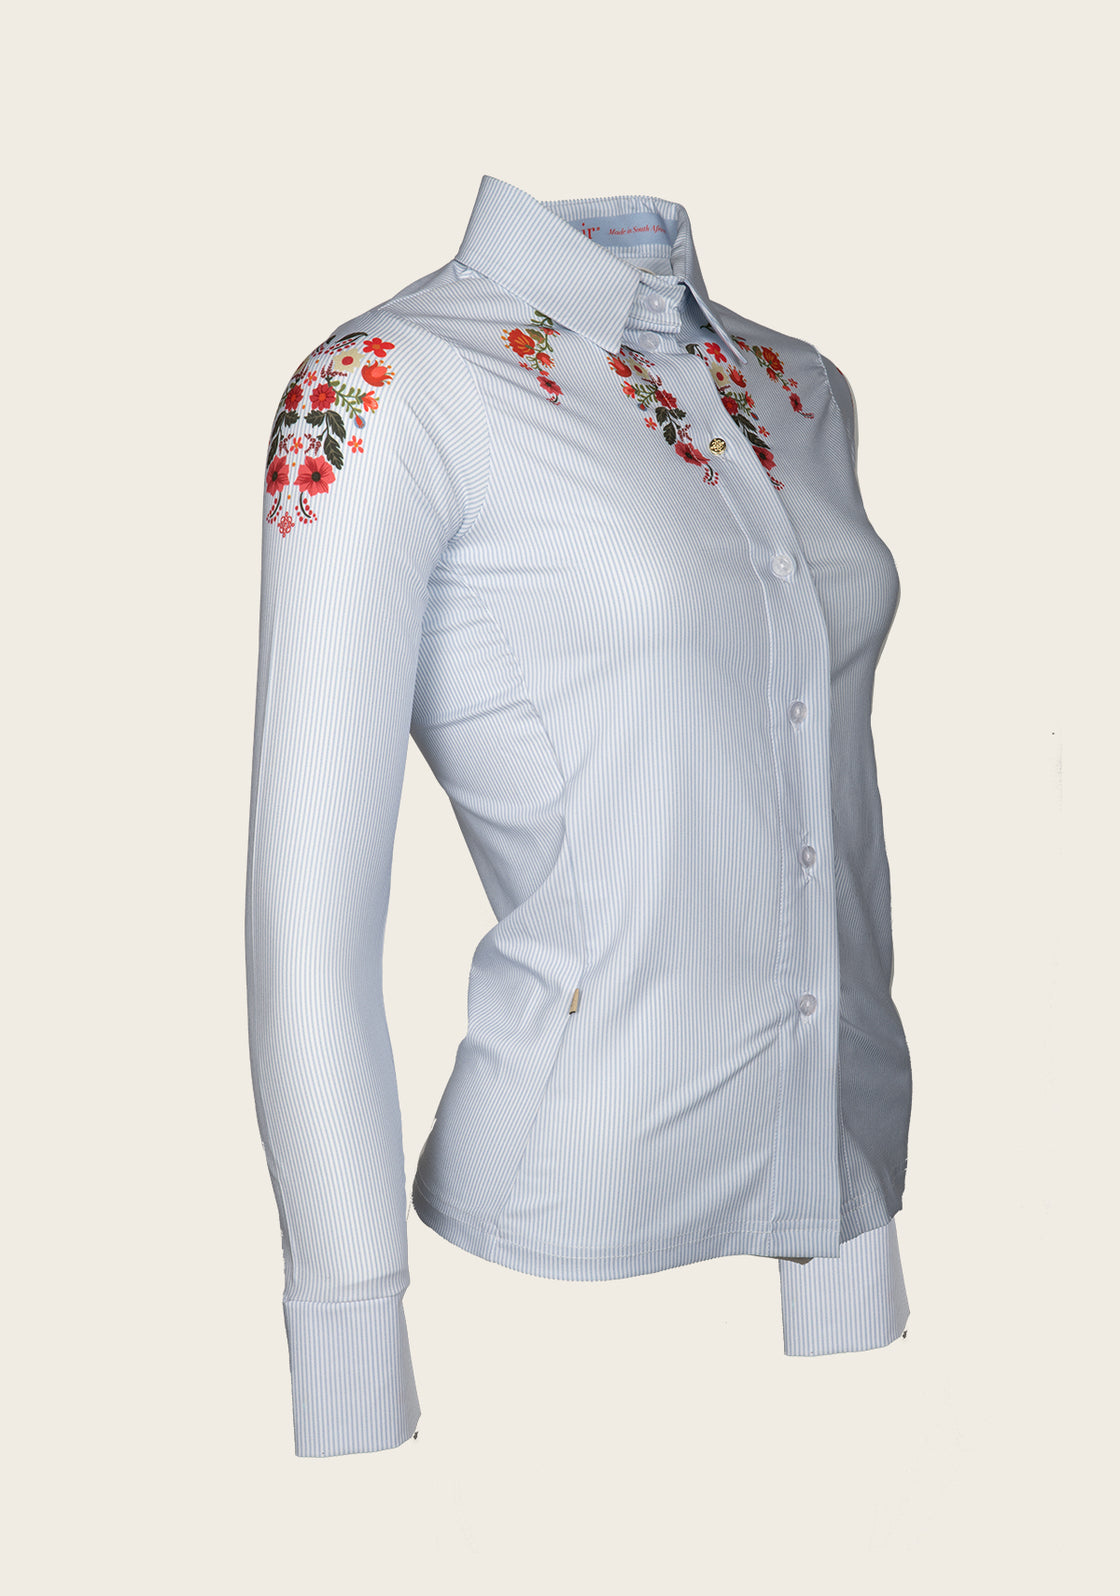 Joie Floral & Blue Stripe Ladies’ Button Shirt